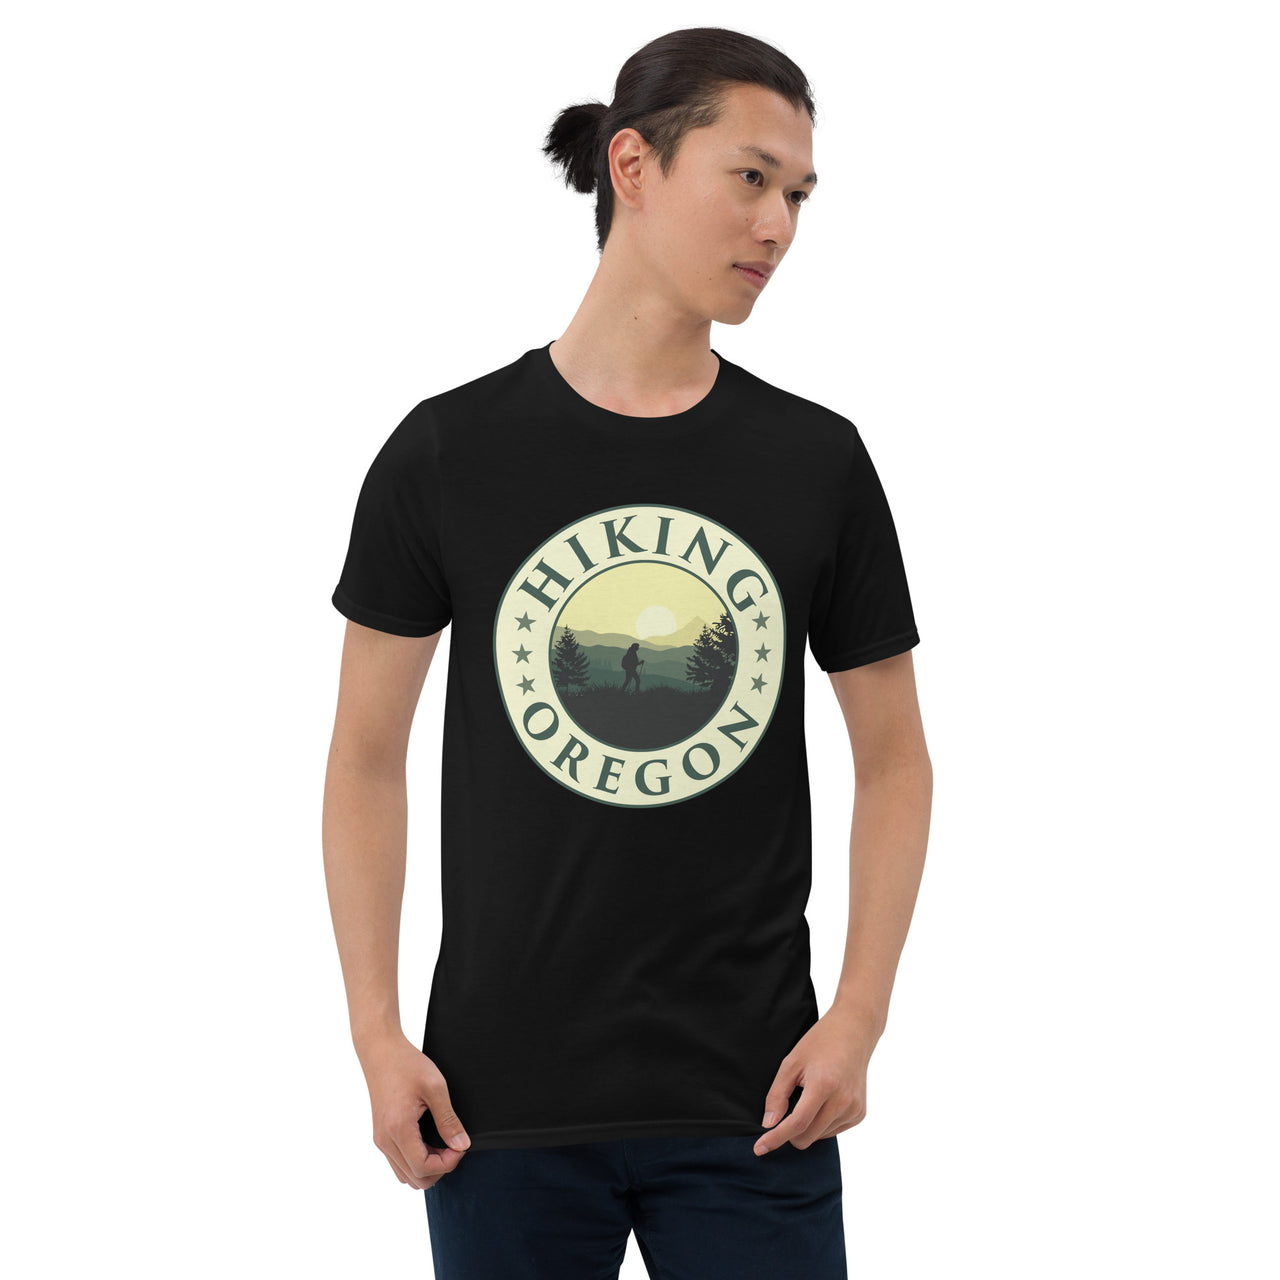 Hiking Oregon - Unisex T-Shirt